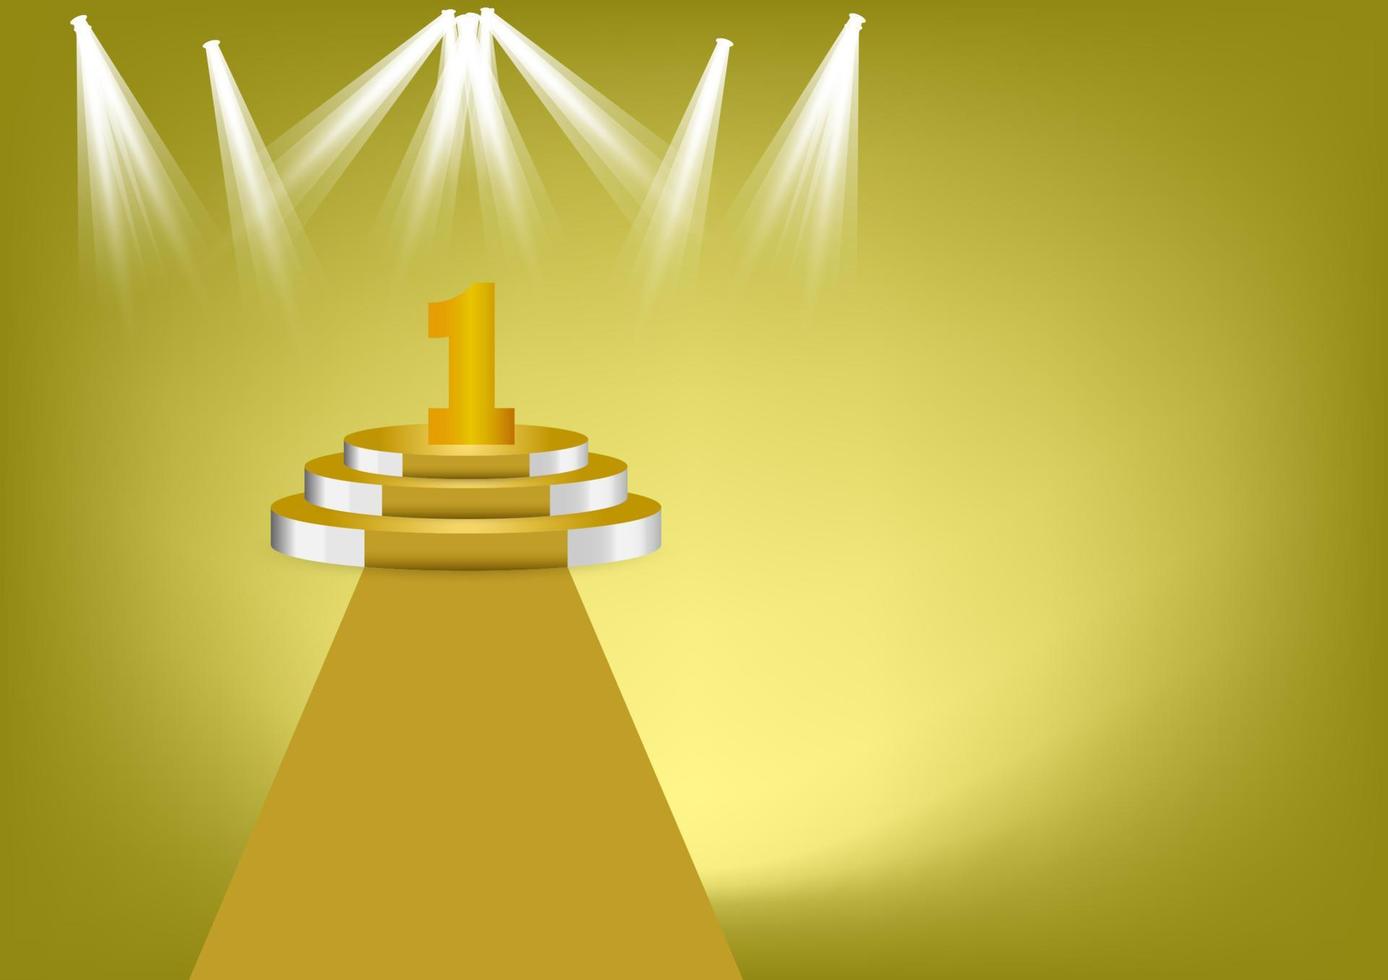 nummer 1 gouden kleur op gouden podium is de winnaar is in de eerste vectorillustratie met gouden kleur achtergrond kopie ruimte vector